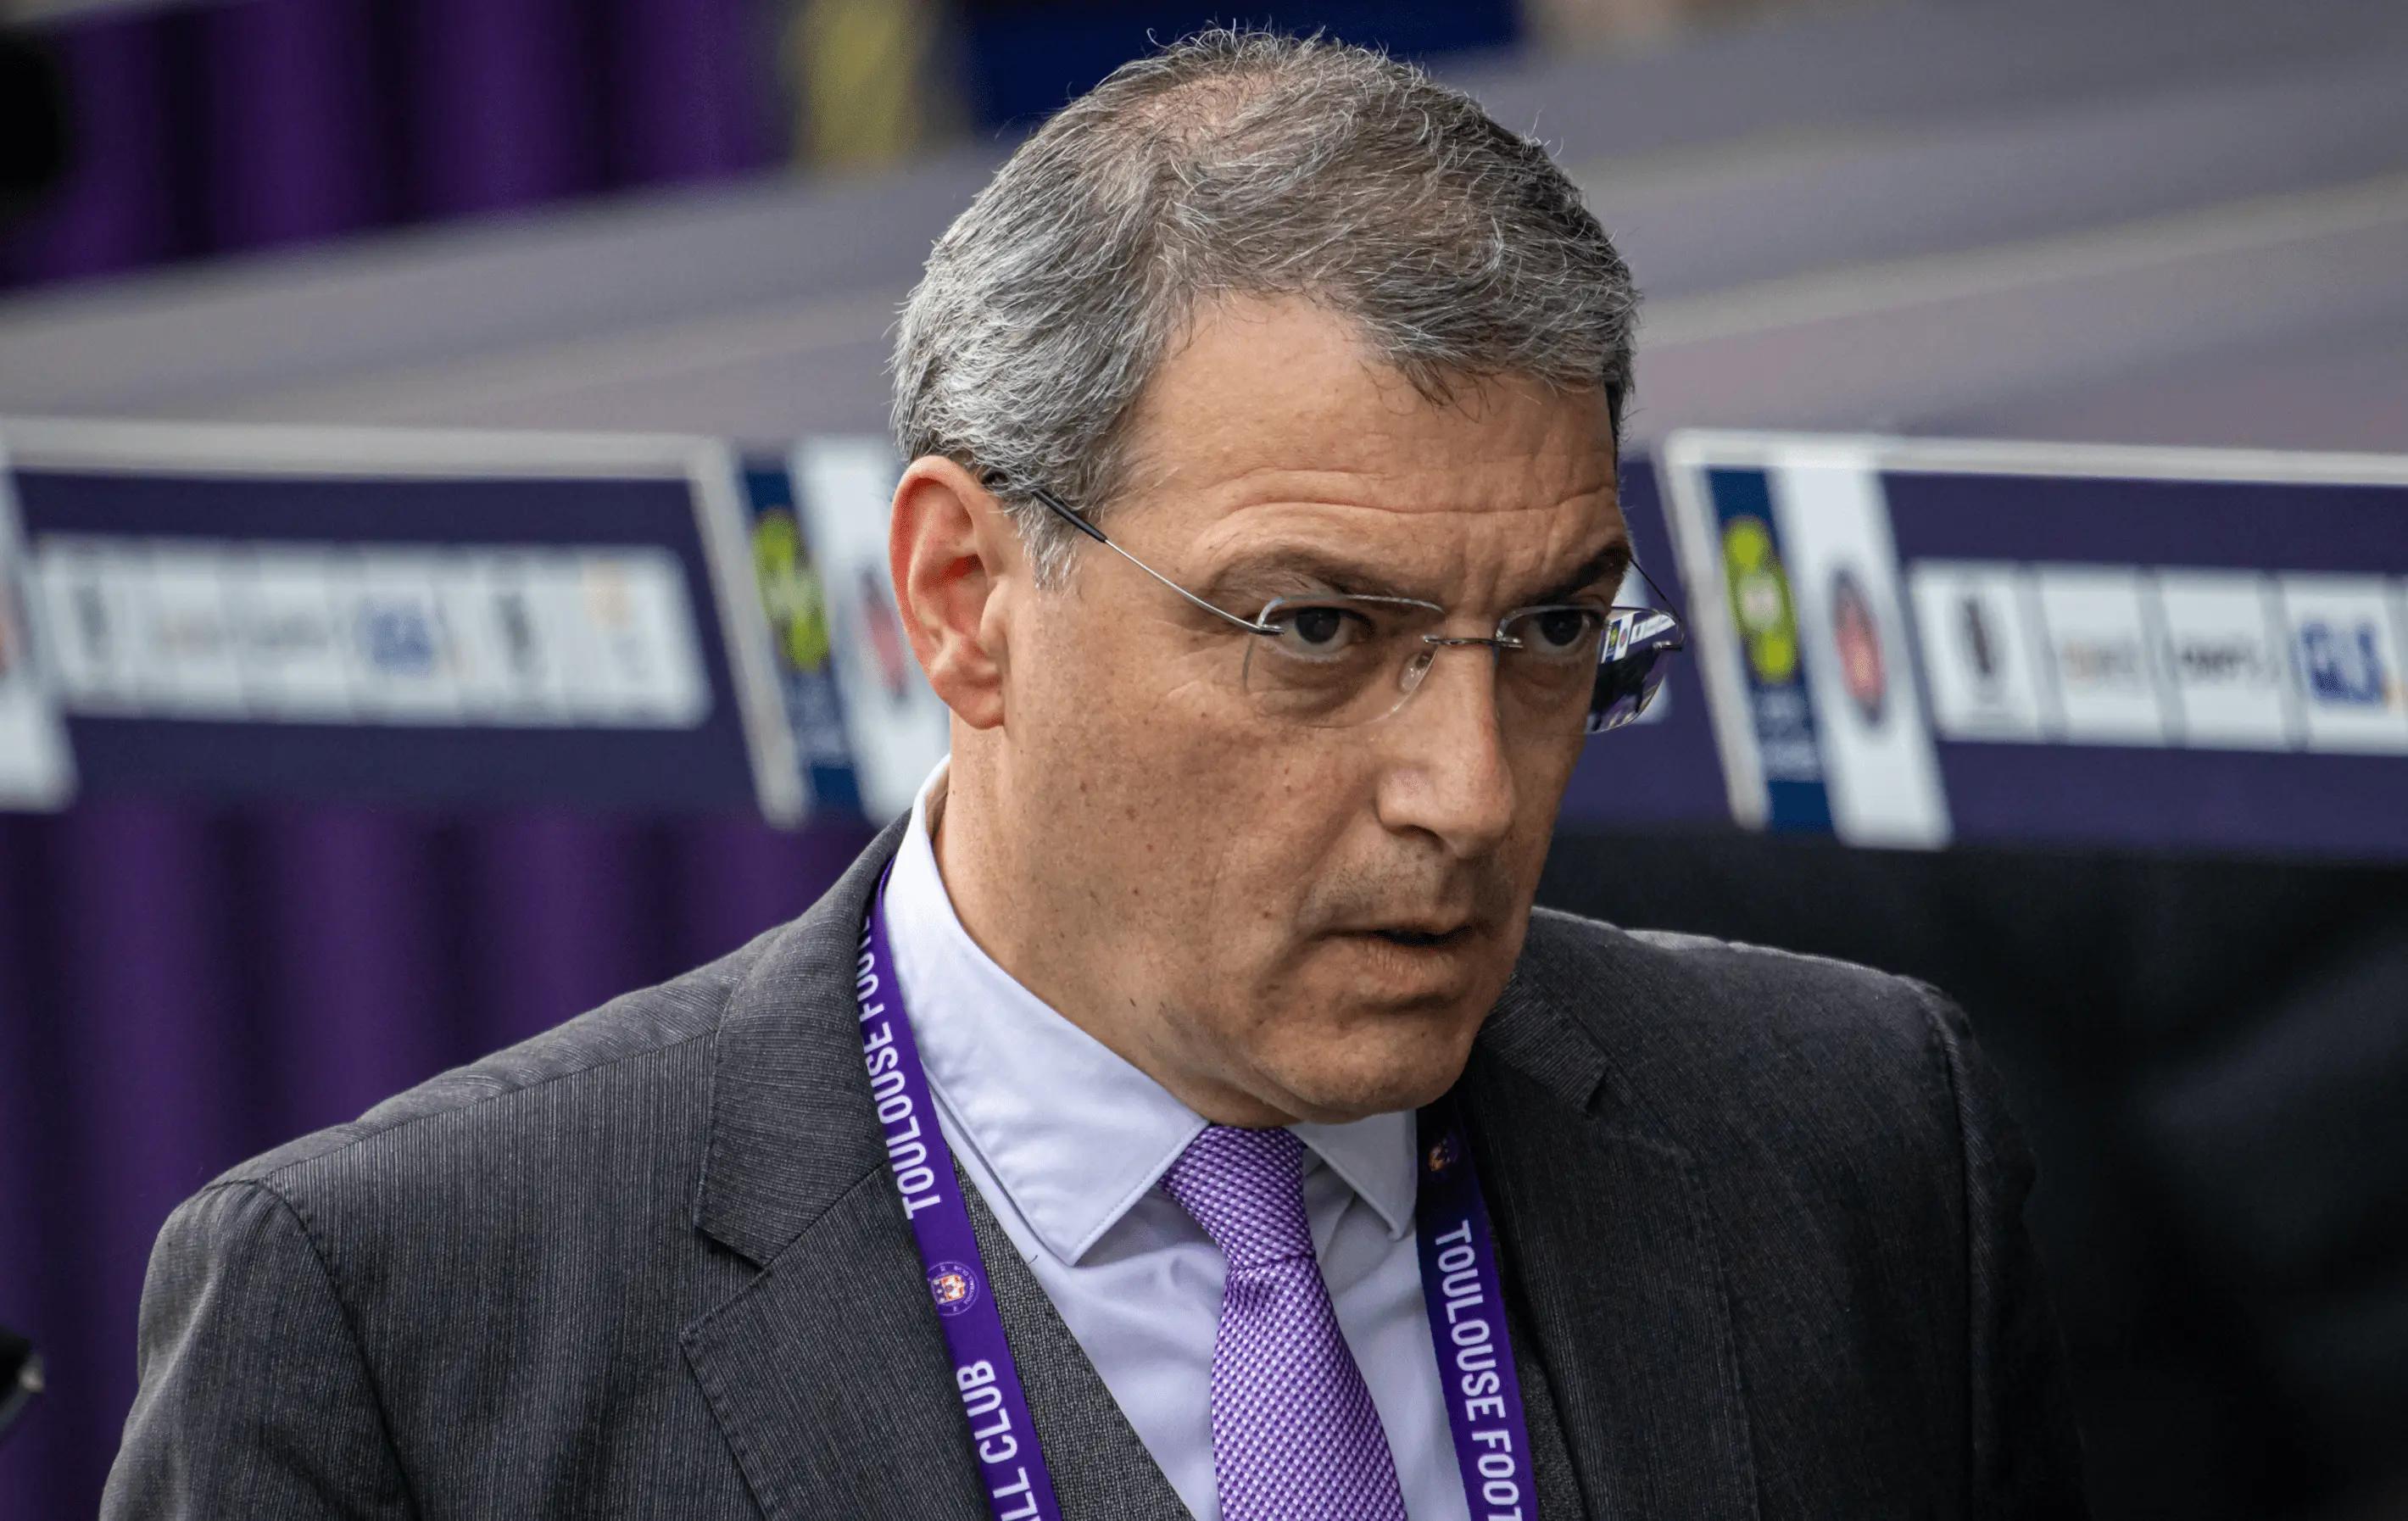 Salary cap dans le football : "le prochain grand projet de l'UEFA", la prédiction de Damien Comolli